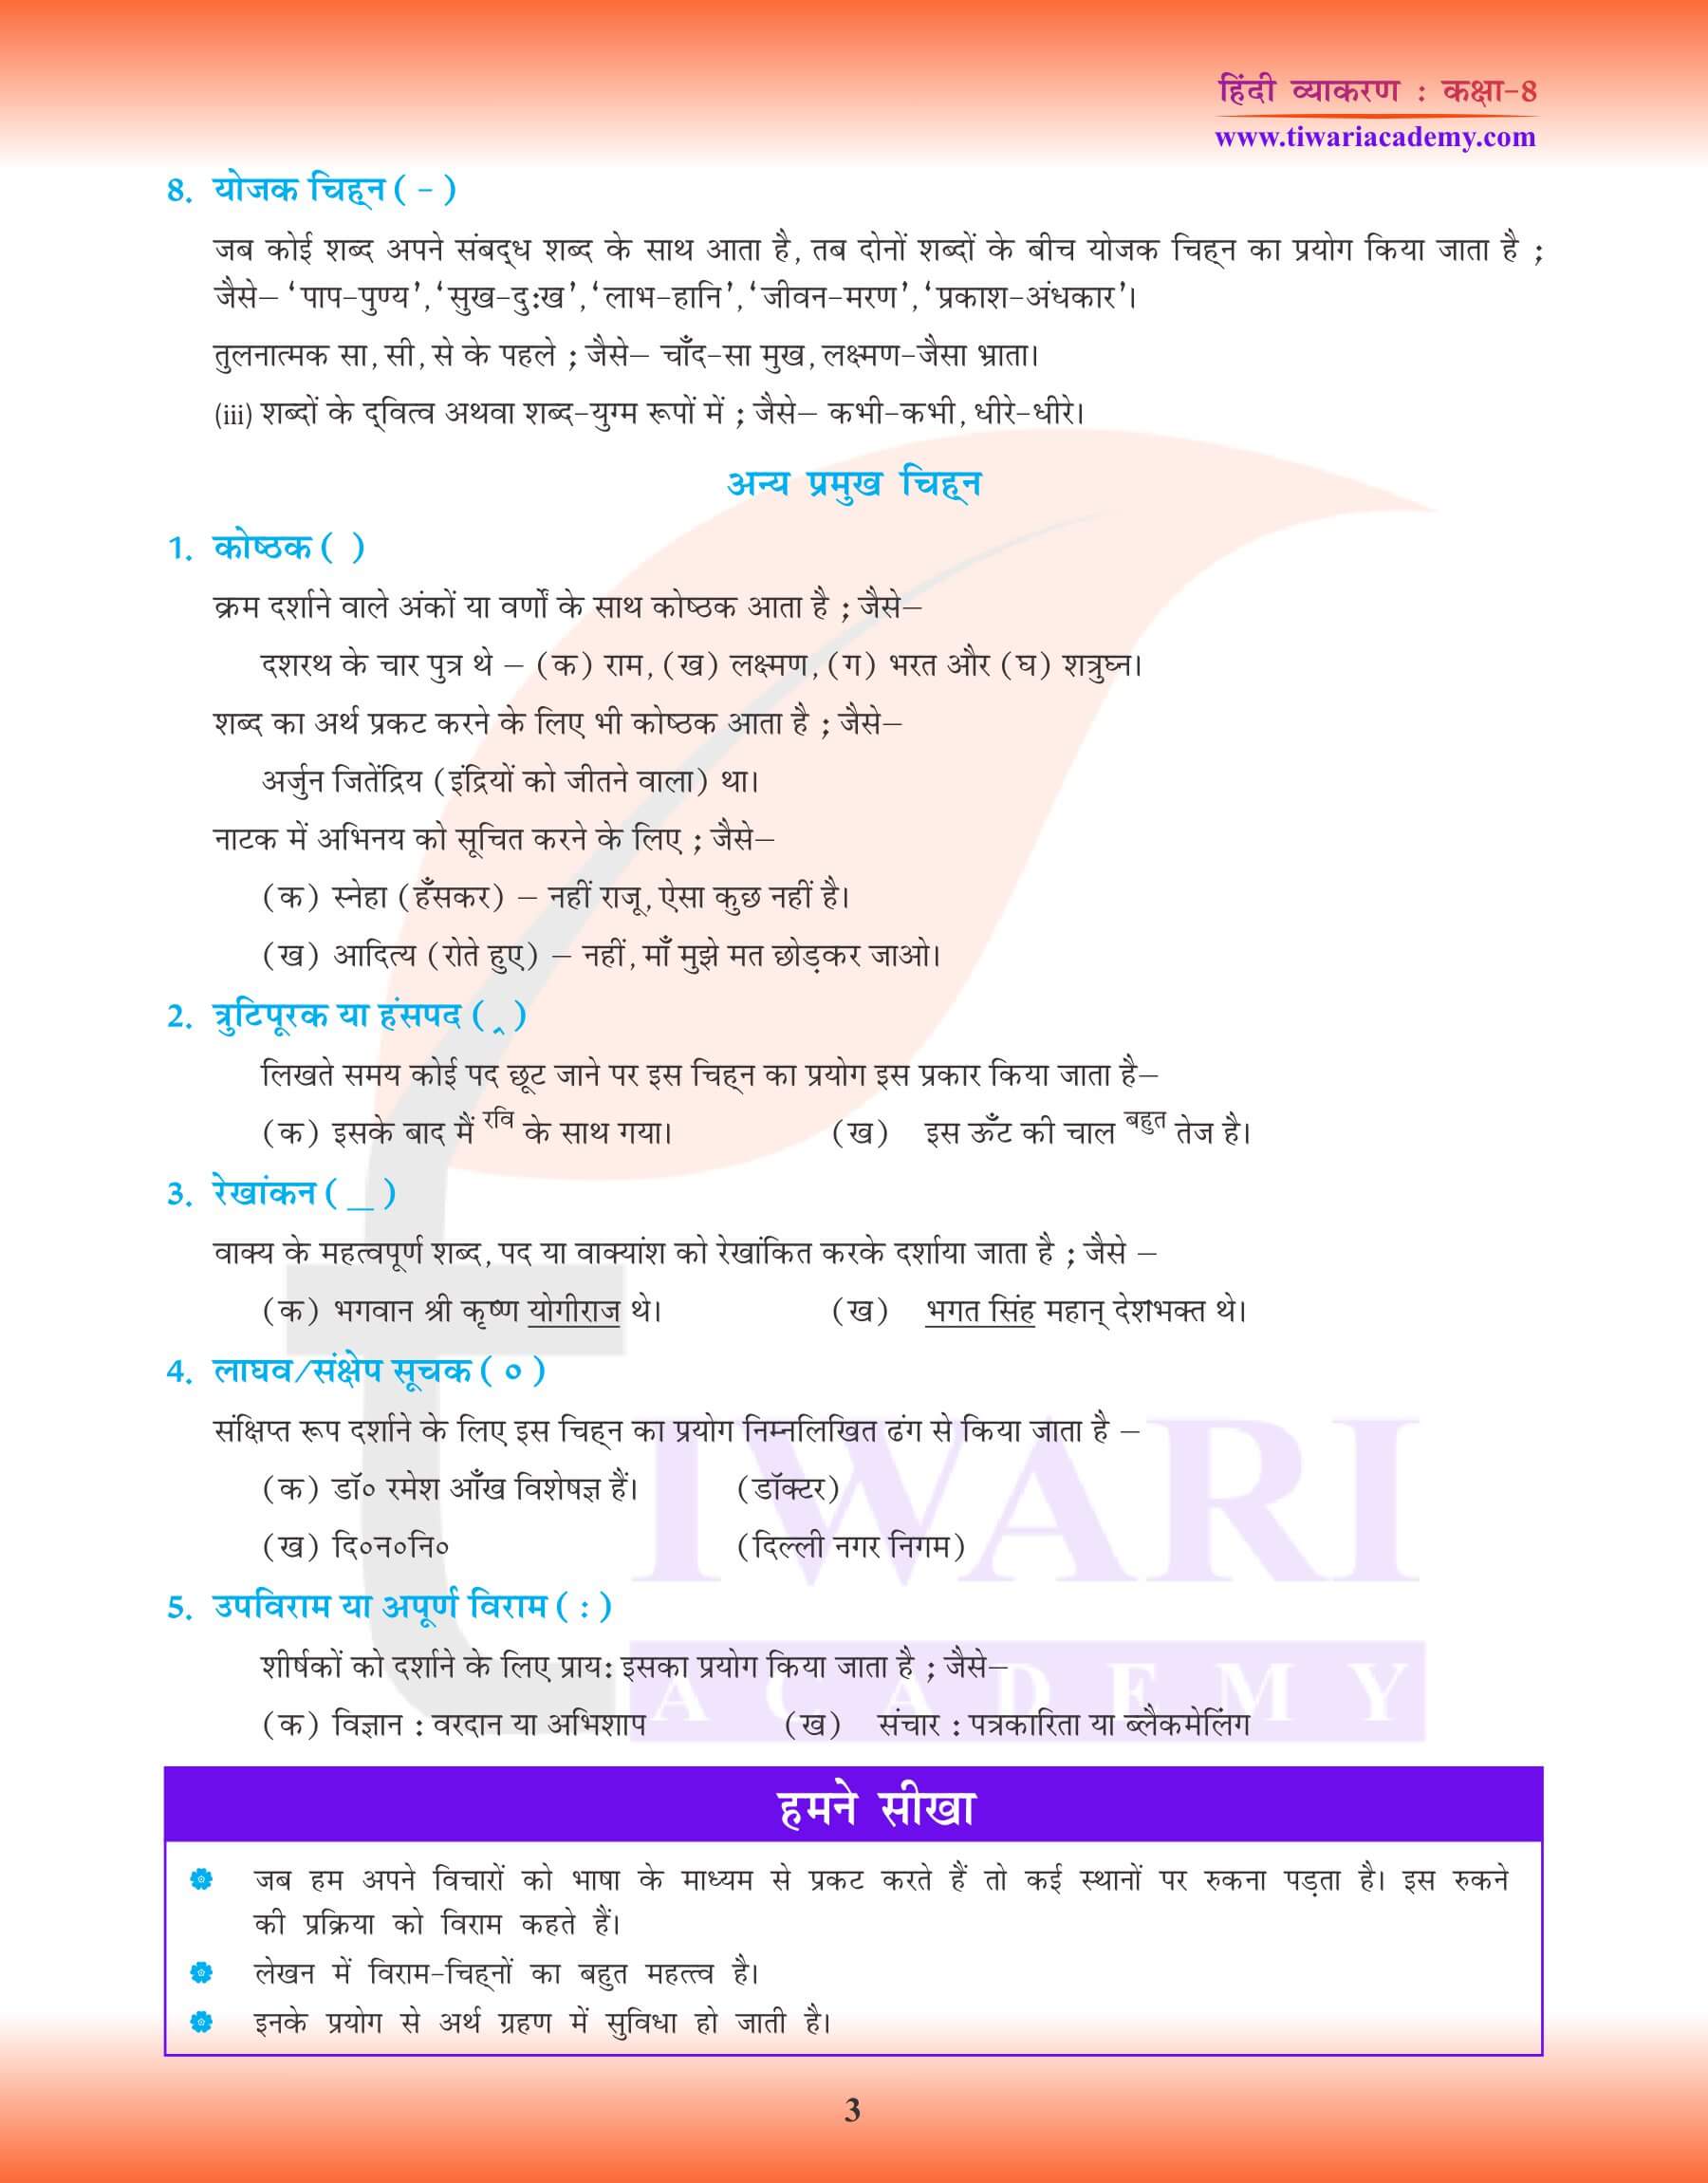 कक्षा 8 हिंदी व्याकरण अध्याय 21 विराम चिन्ह प्रश्न उत्तर